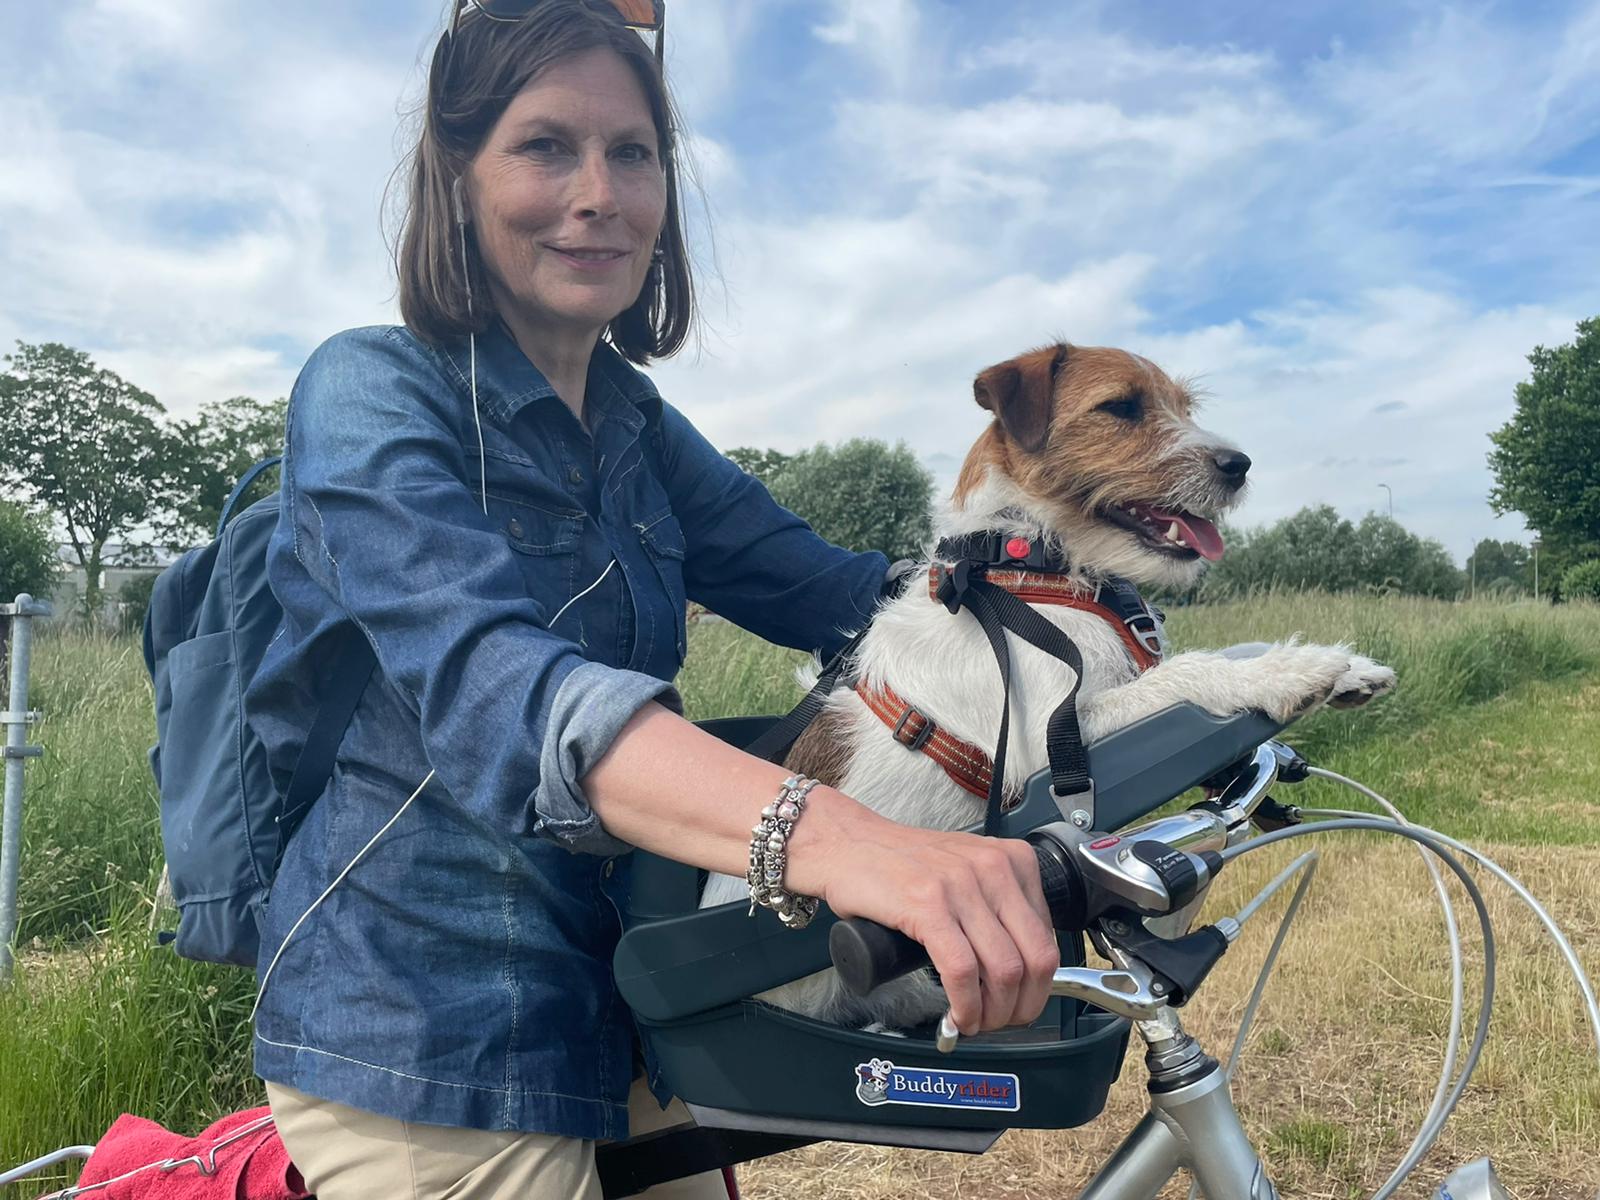 Grace Barmhartig terugtrekken De originele Buddyrider voor je hond mee op de fiets - Buddyrider.nl